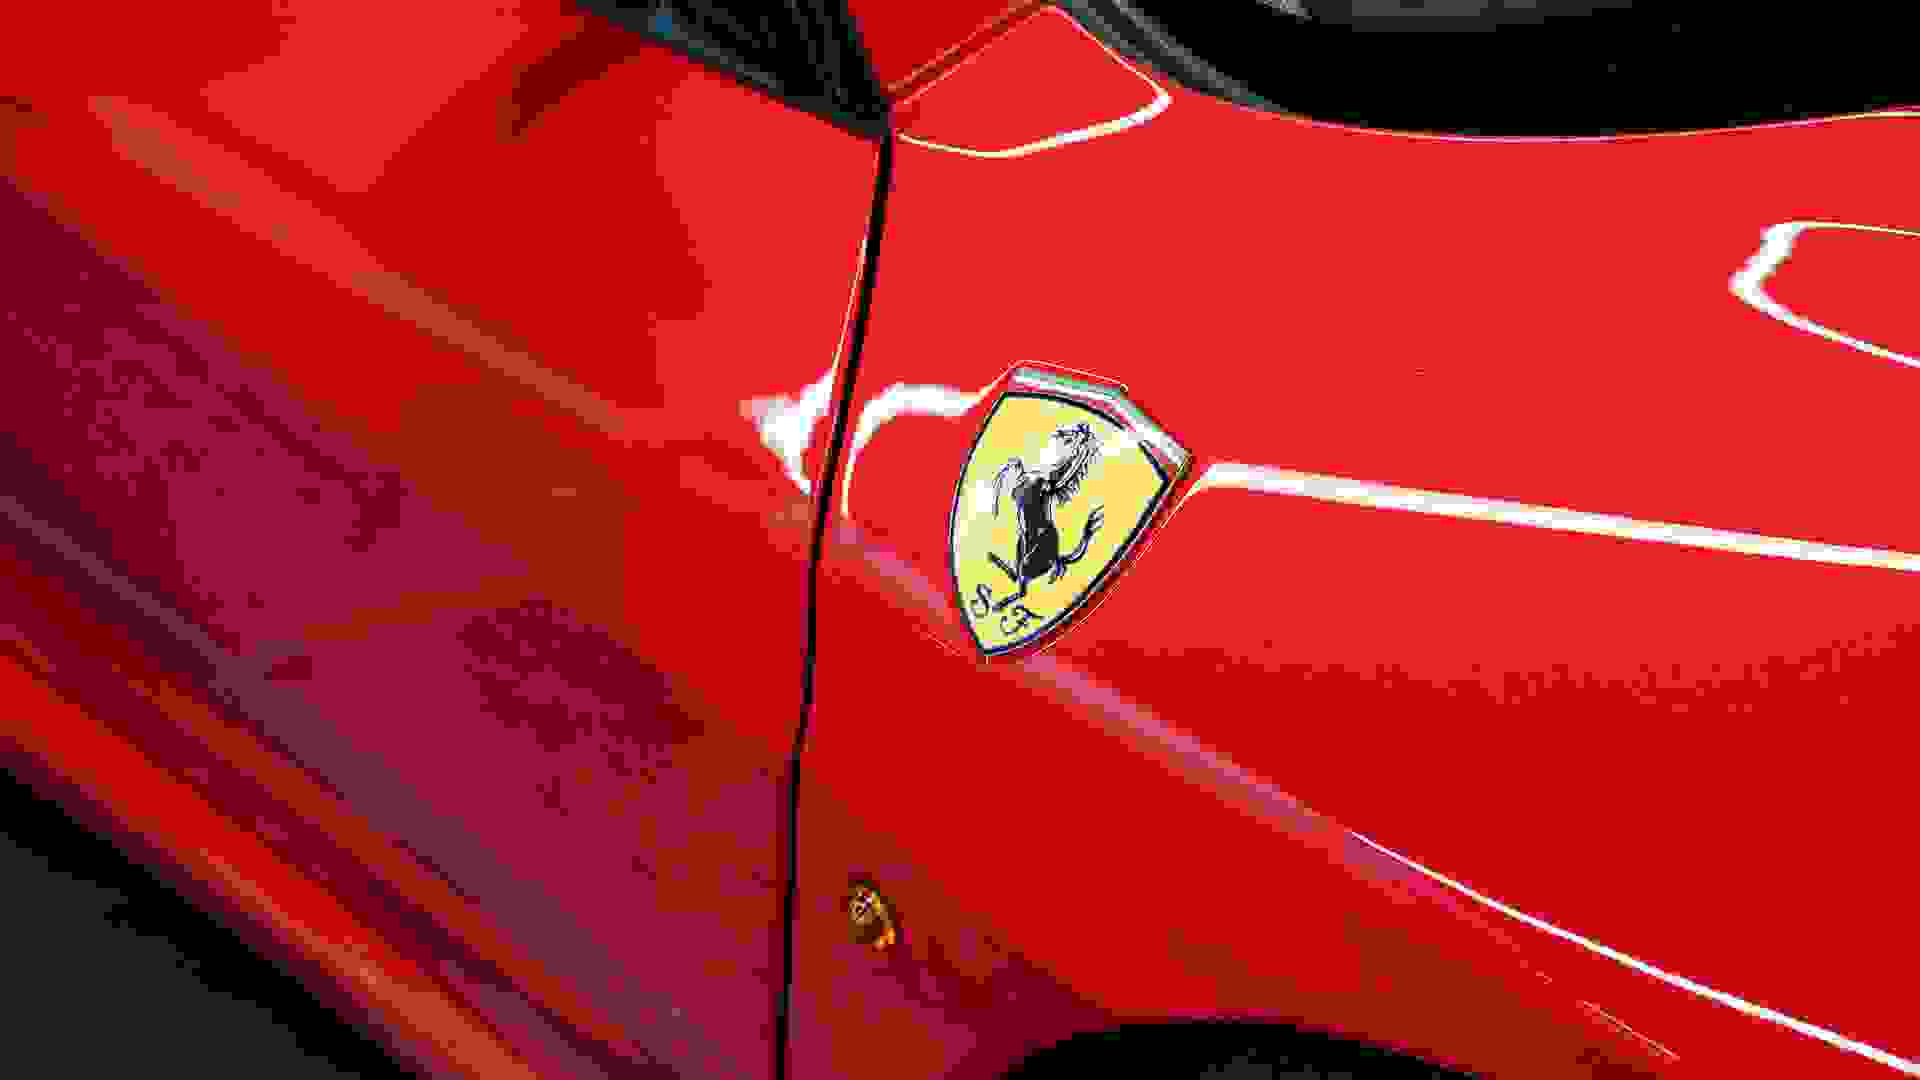 Ferrari F430 Photo 971b8478-f055-48bd-bec0-8534068067d2.jpg